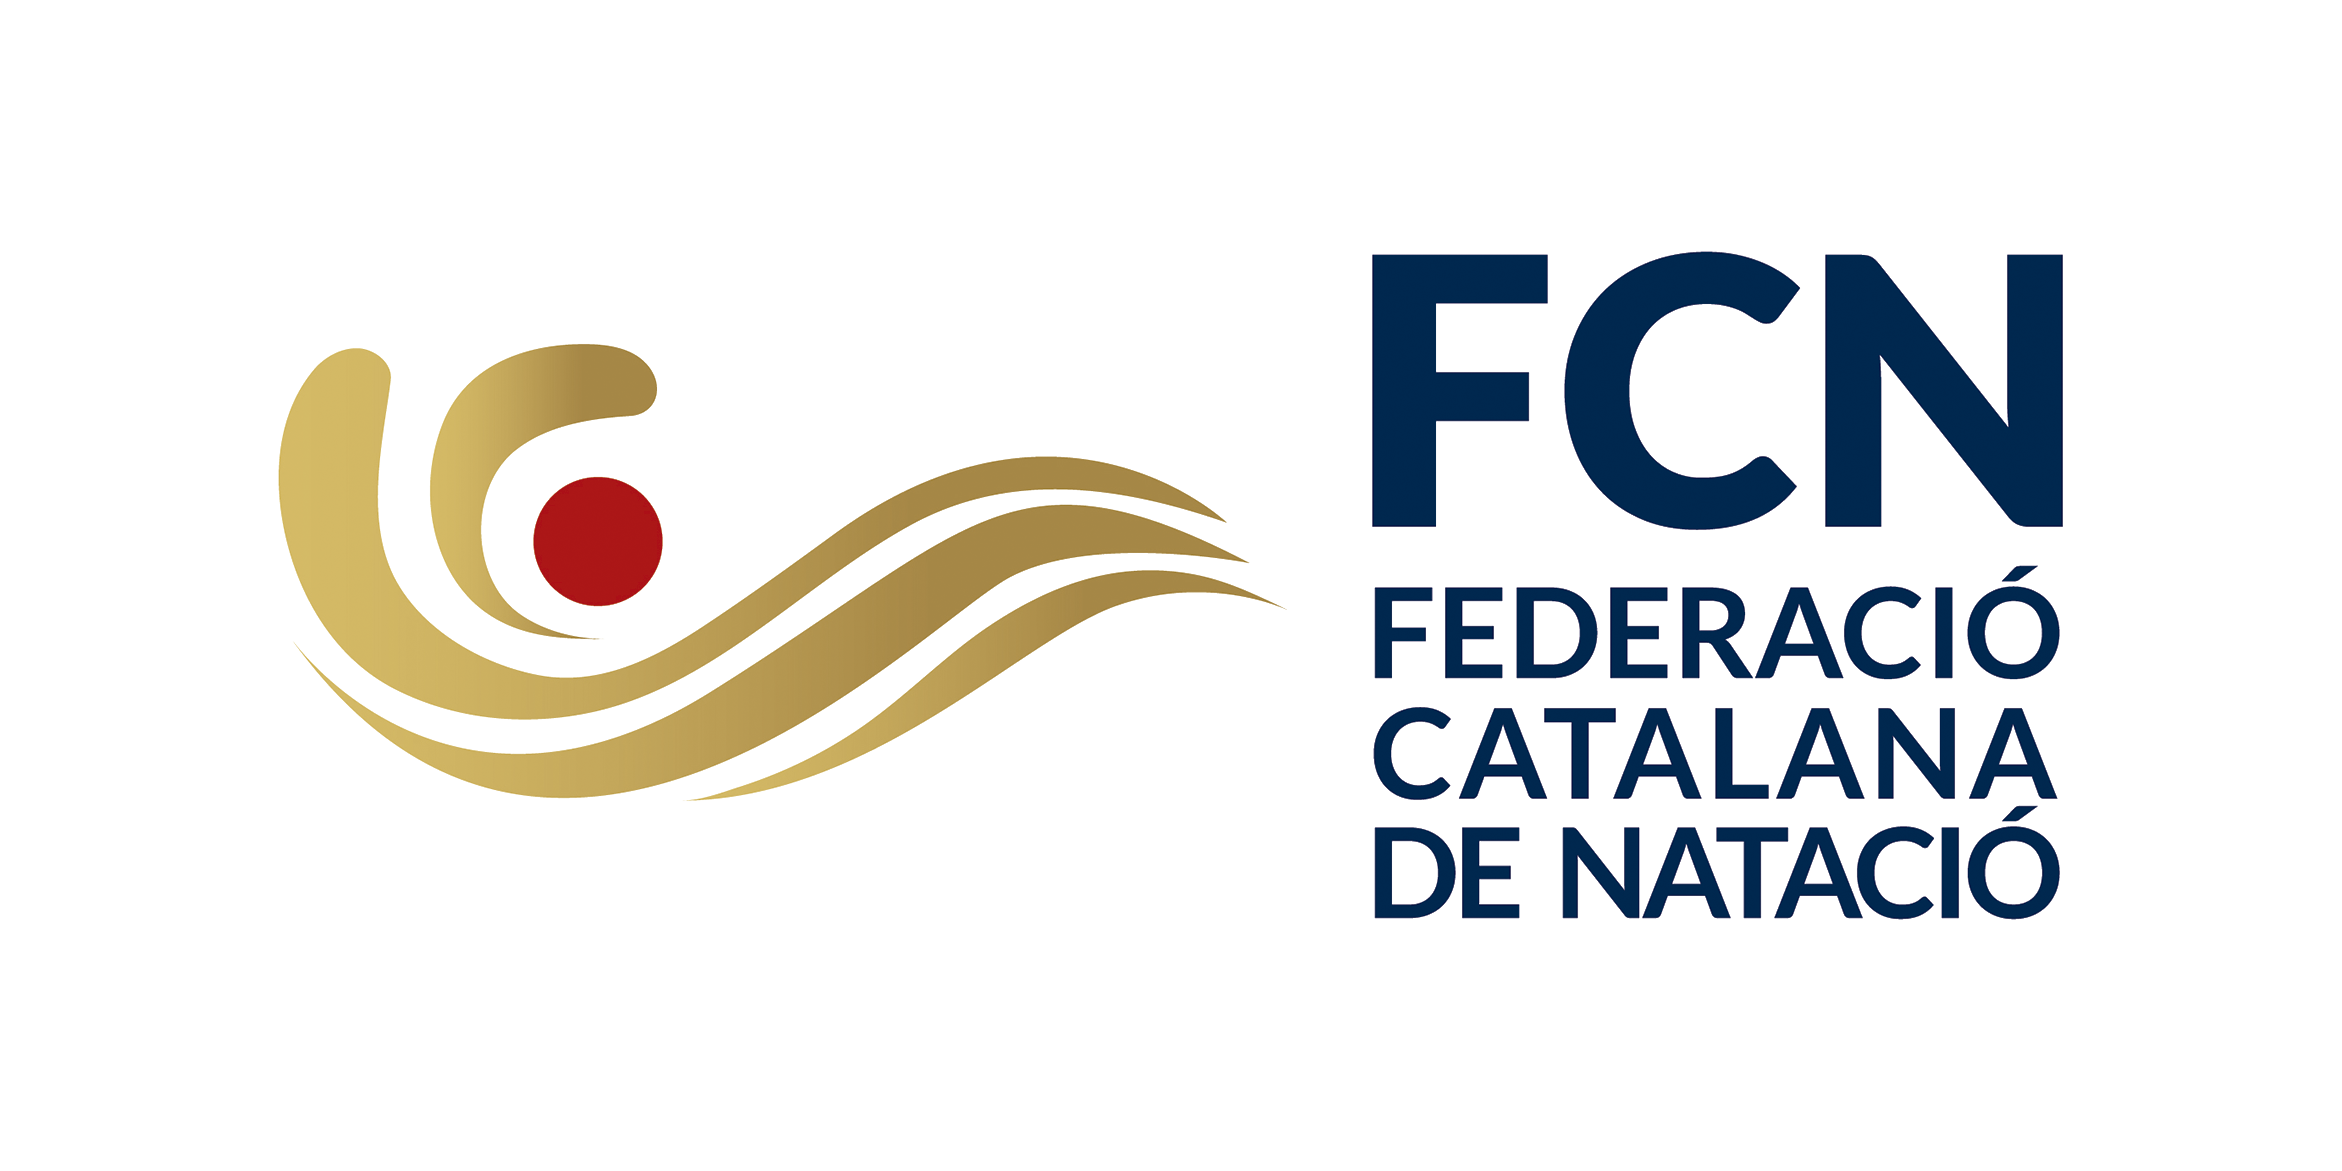 Fed. Catalana de Natació